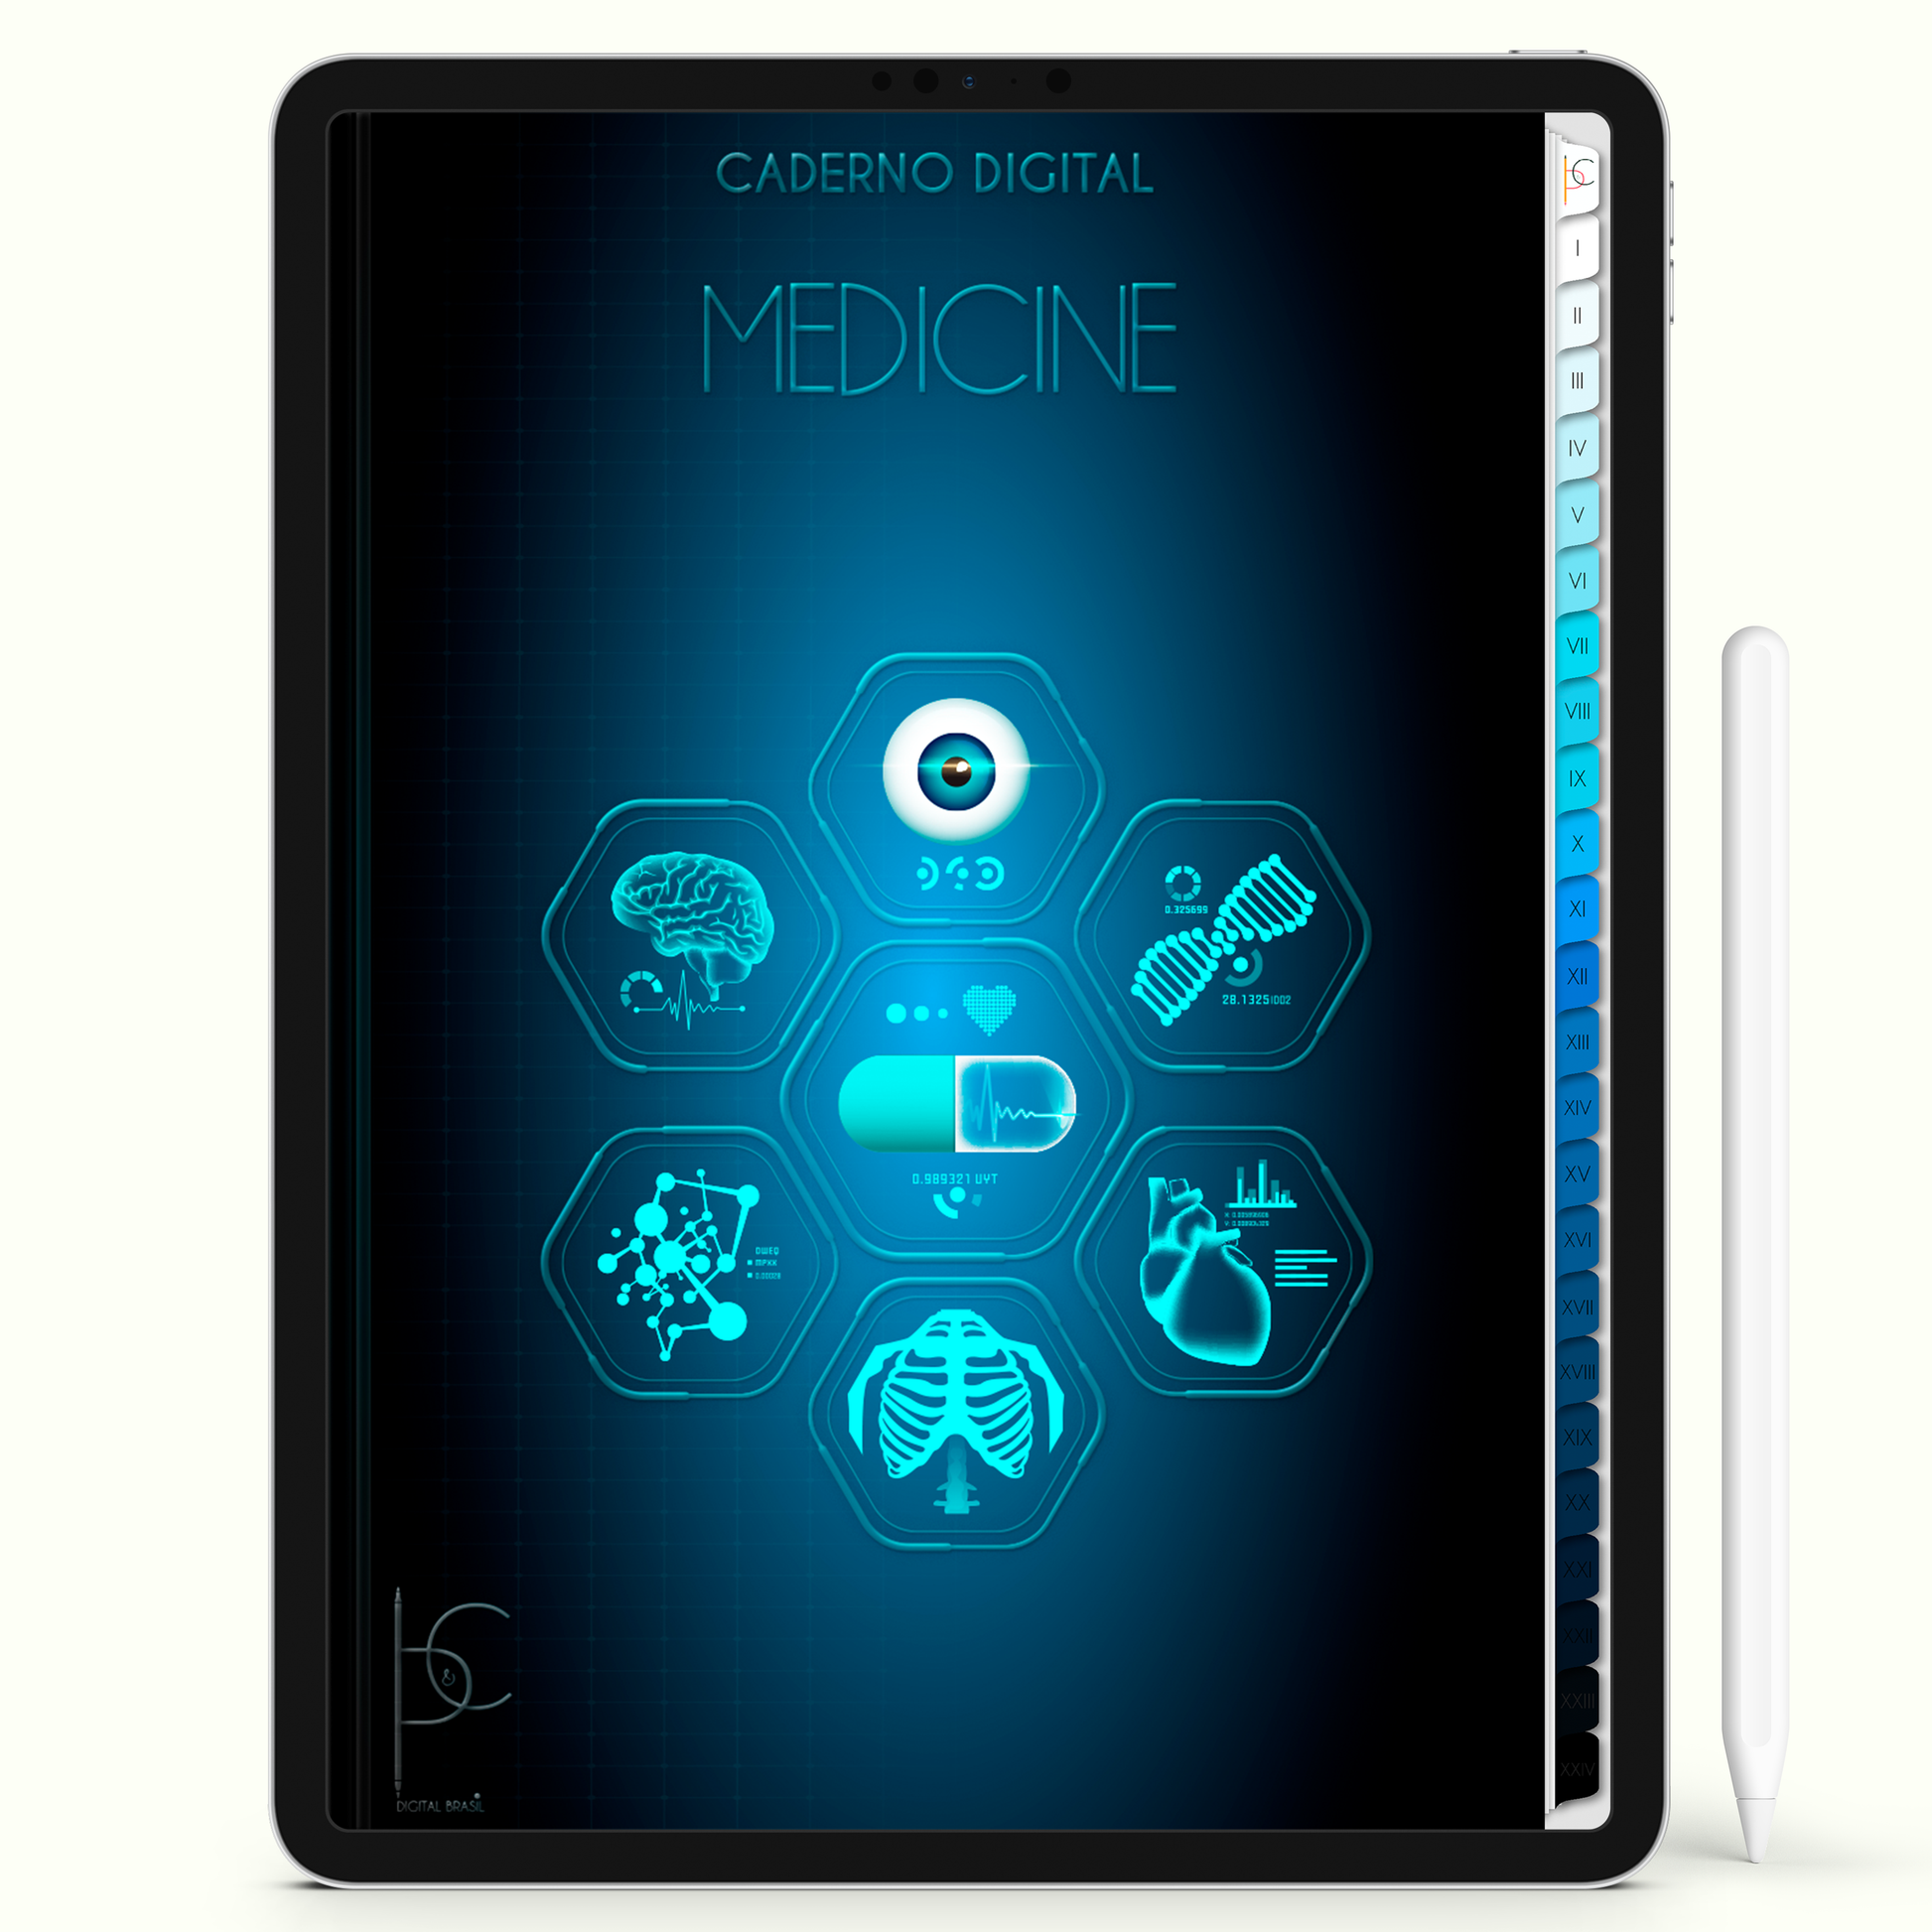 Caderno Digital 24 Matérias - Caderno Digital Medicina, para ipad e tablet android. Cadernos & Planner Digital Brasil